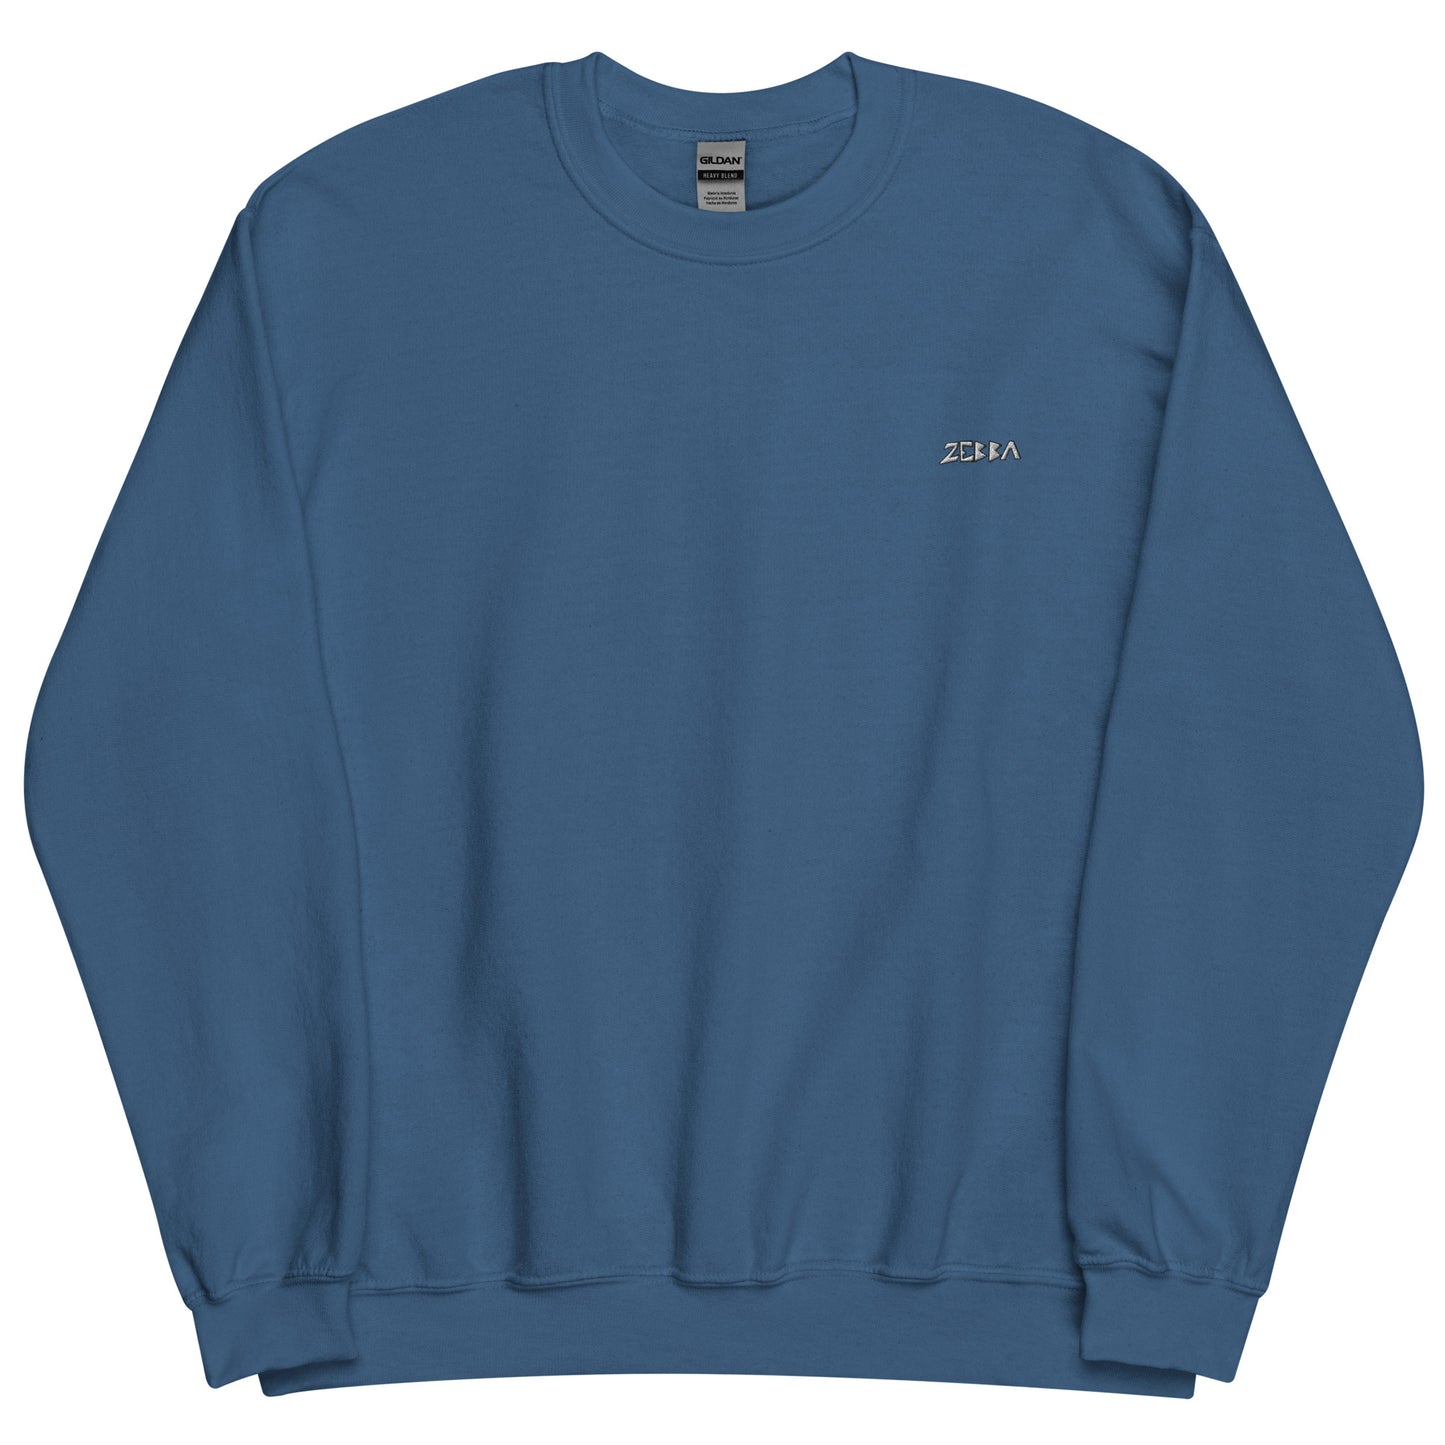 OG Sweater